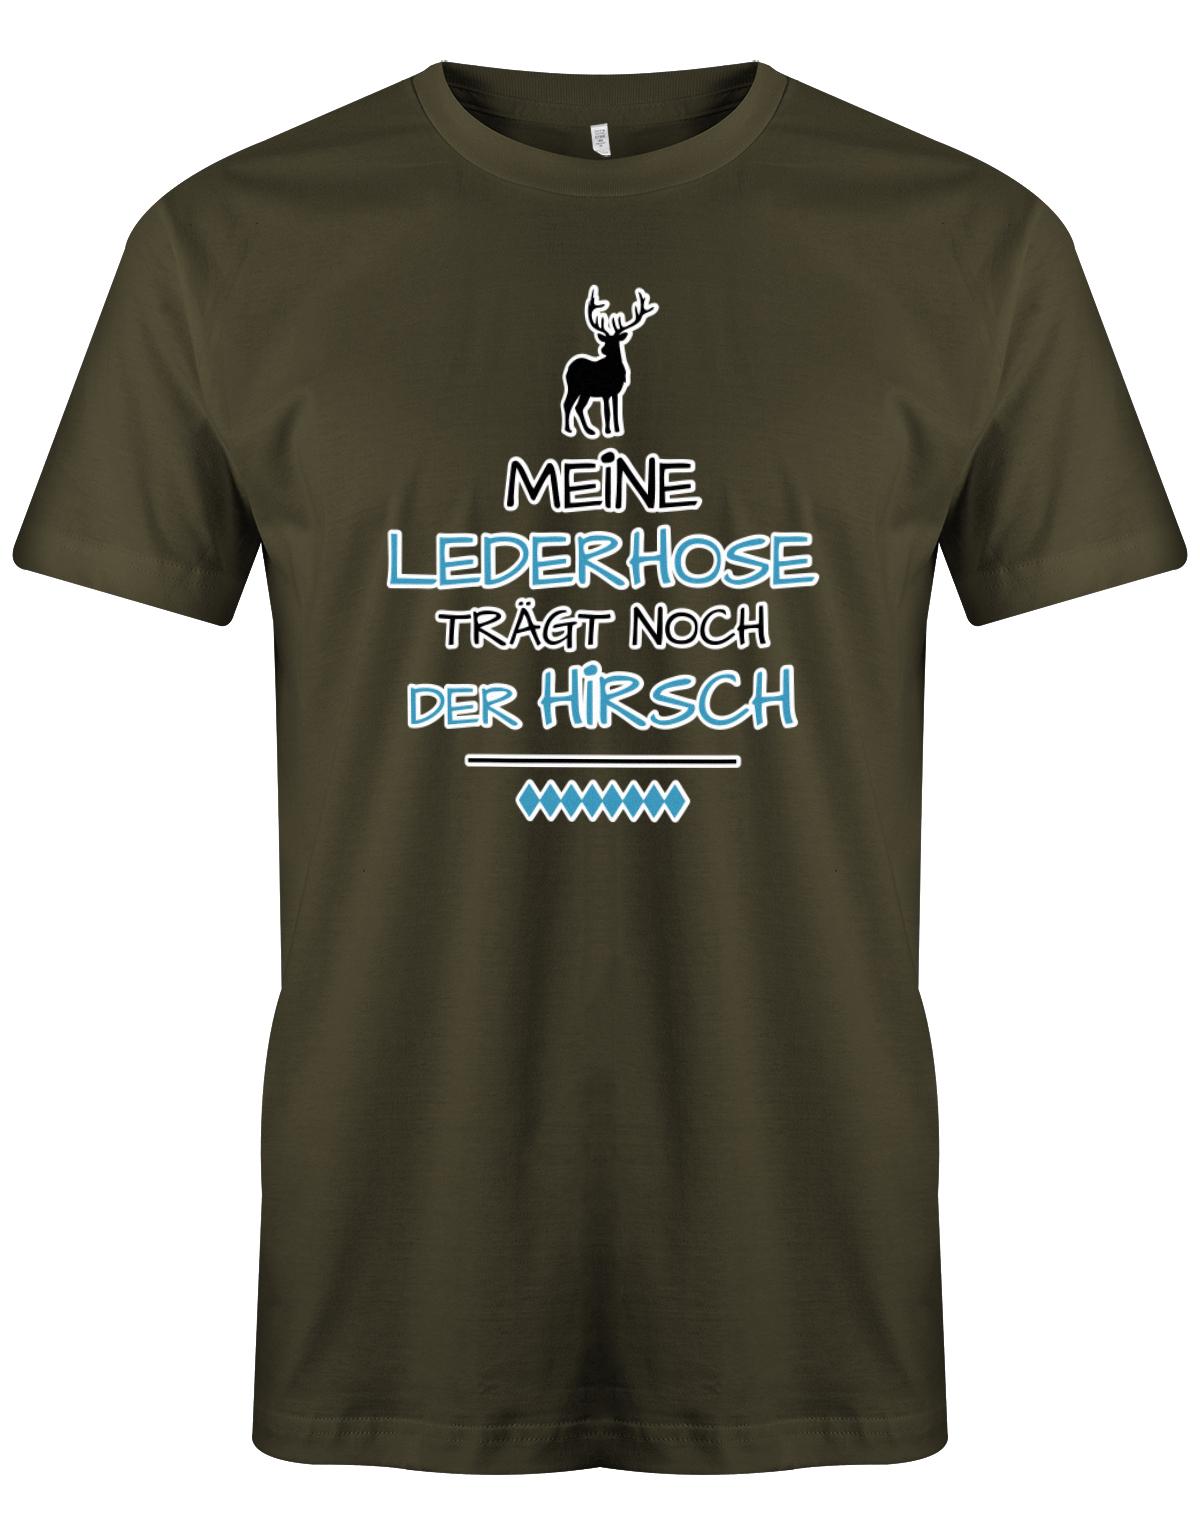 Meine-lederhose-tr-gt-noch-der-Hirsch-Digital-Herren-Shirt-army